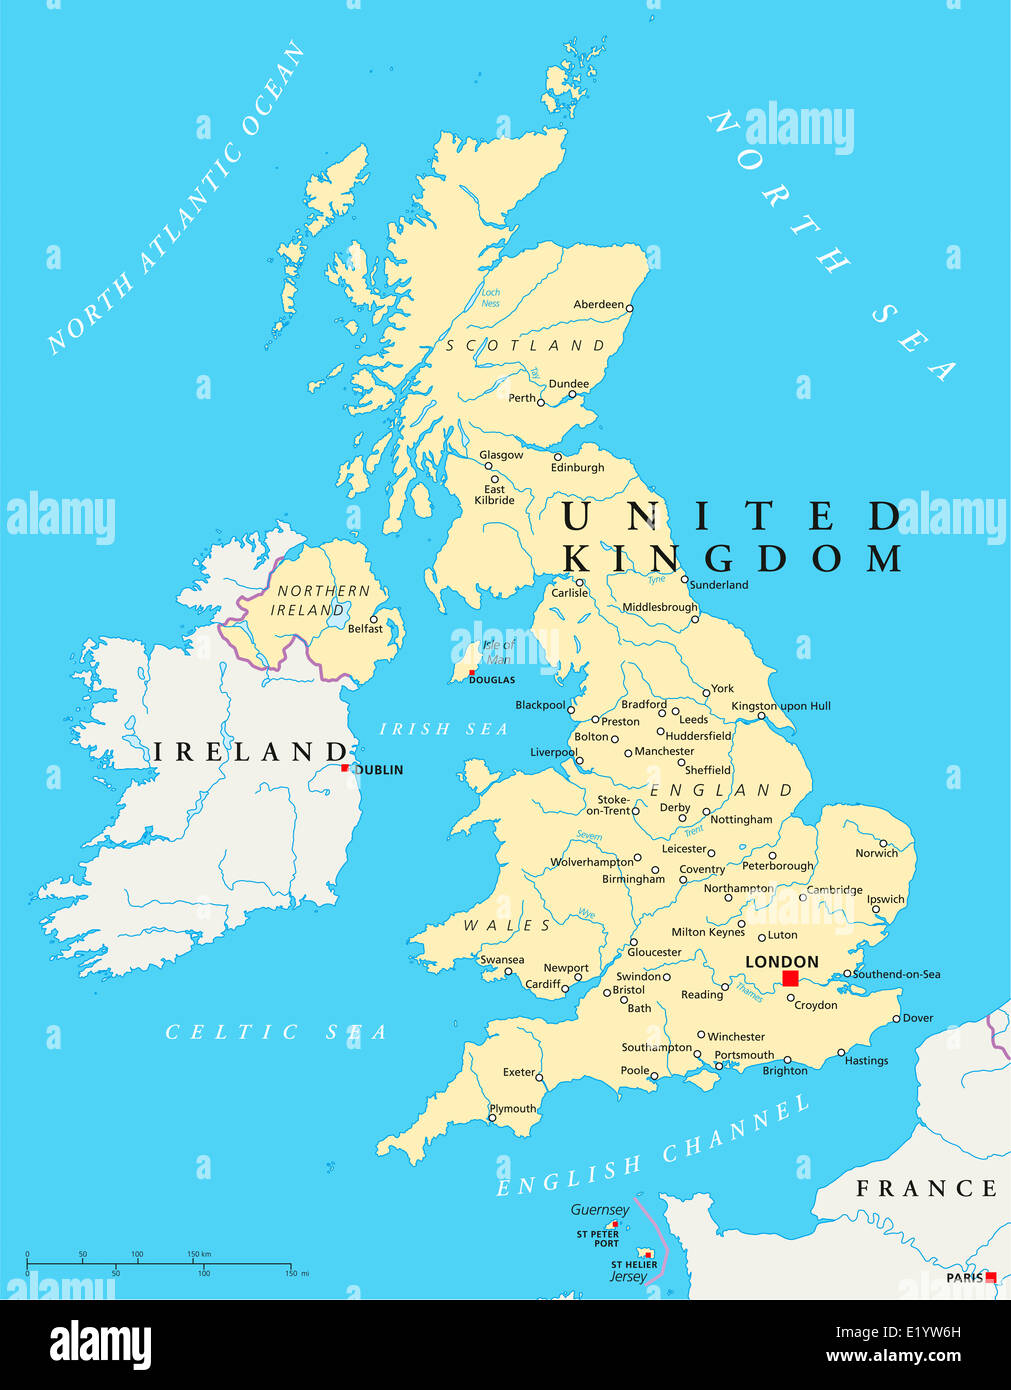 Regno Unito Mappa Politico con capitale Londra, confini nazionali più importanti città, fiumi e laghi. Etichetta inglese. Foto Stock